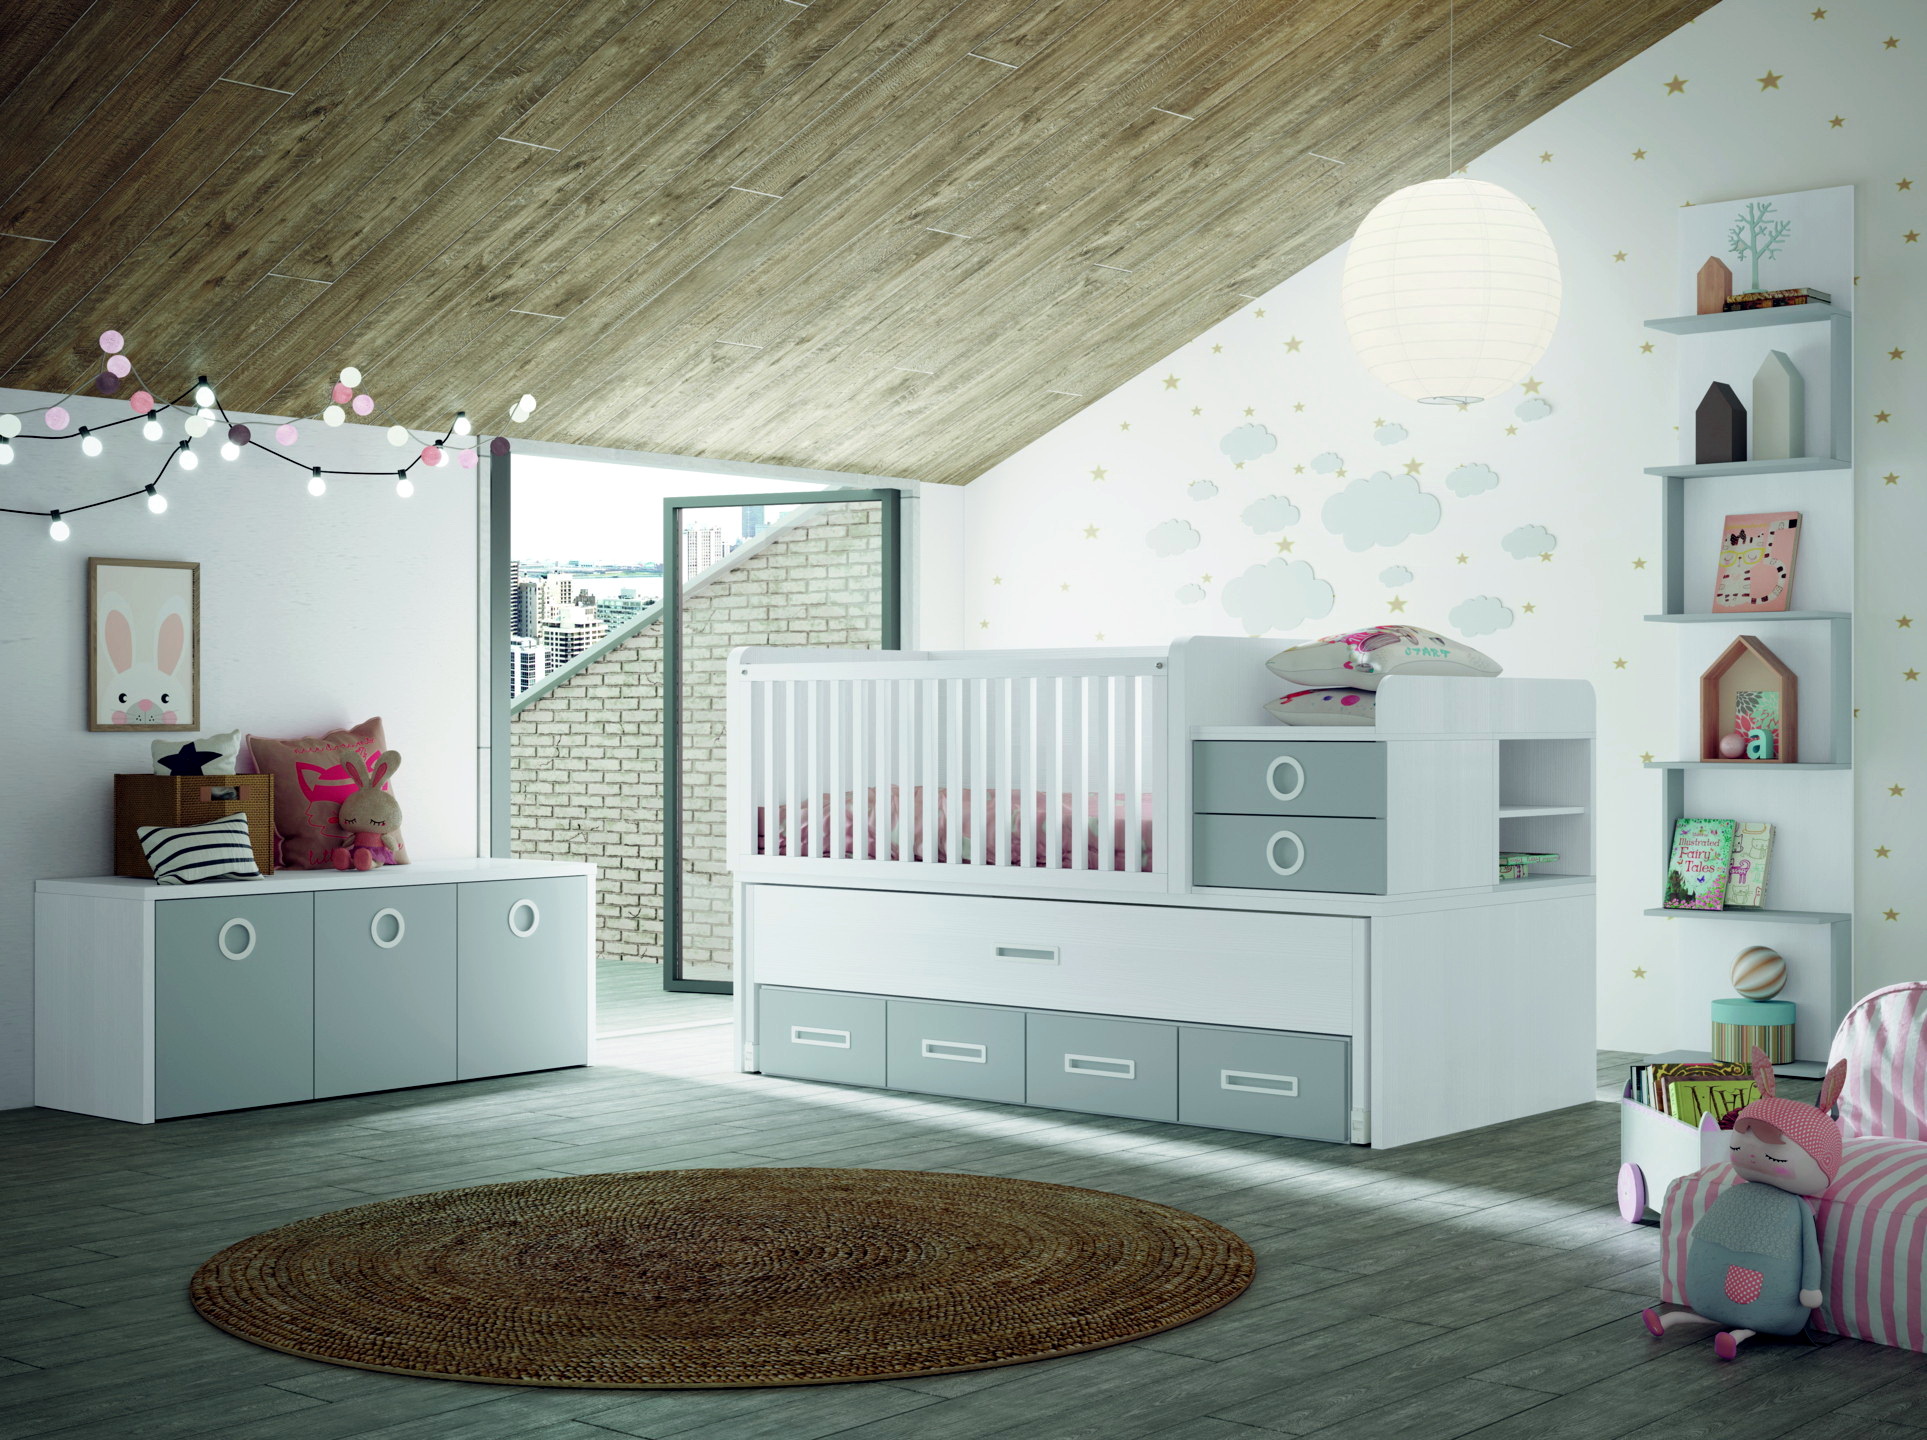 NEW AVANT3 dormitorios infantiles by Yaboni 085 CUNA CONVERTIBLE de venta en Muebles ANTOÑÁN León